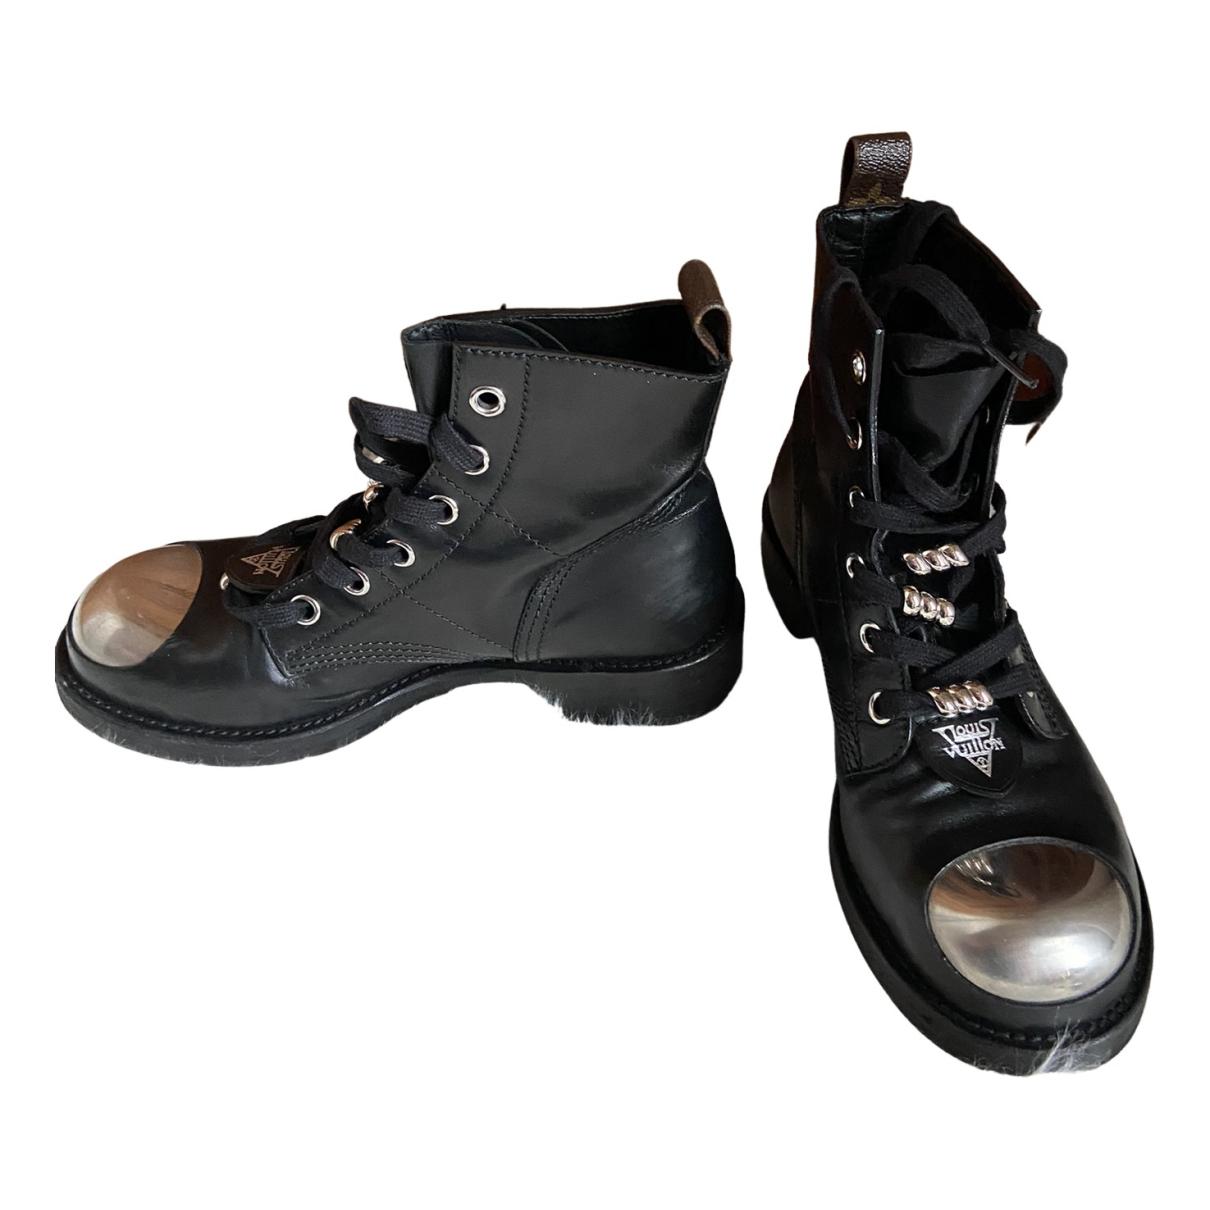 Louis Vuitton Nylon Lace-Up Boots - Black Boots, Shoes - LOU752181